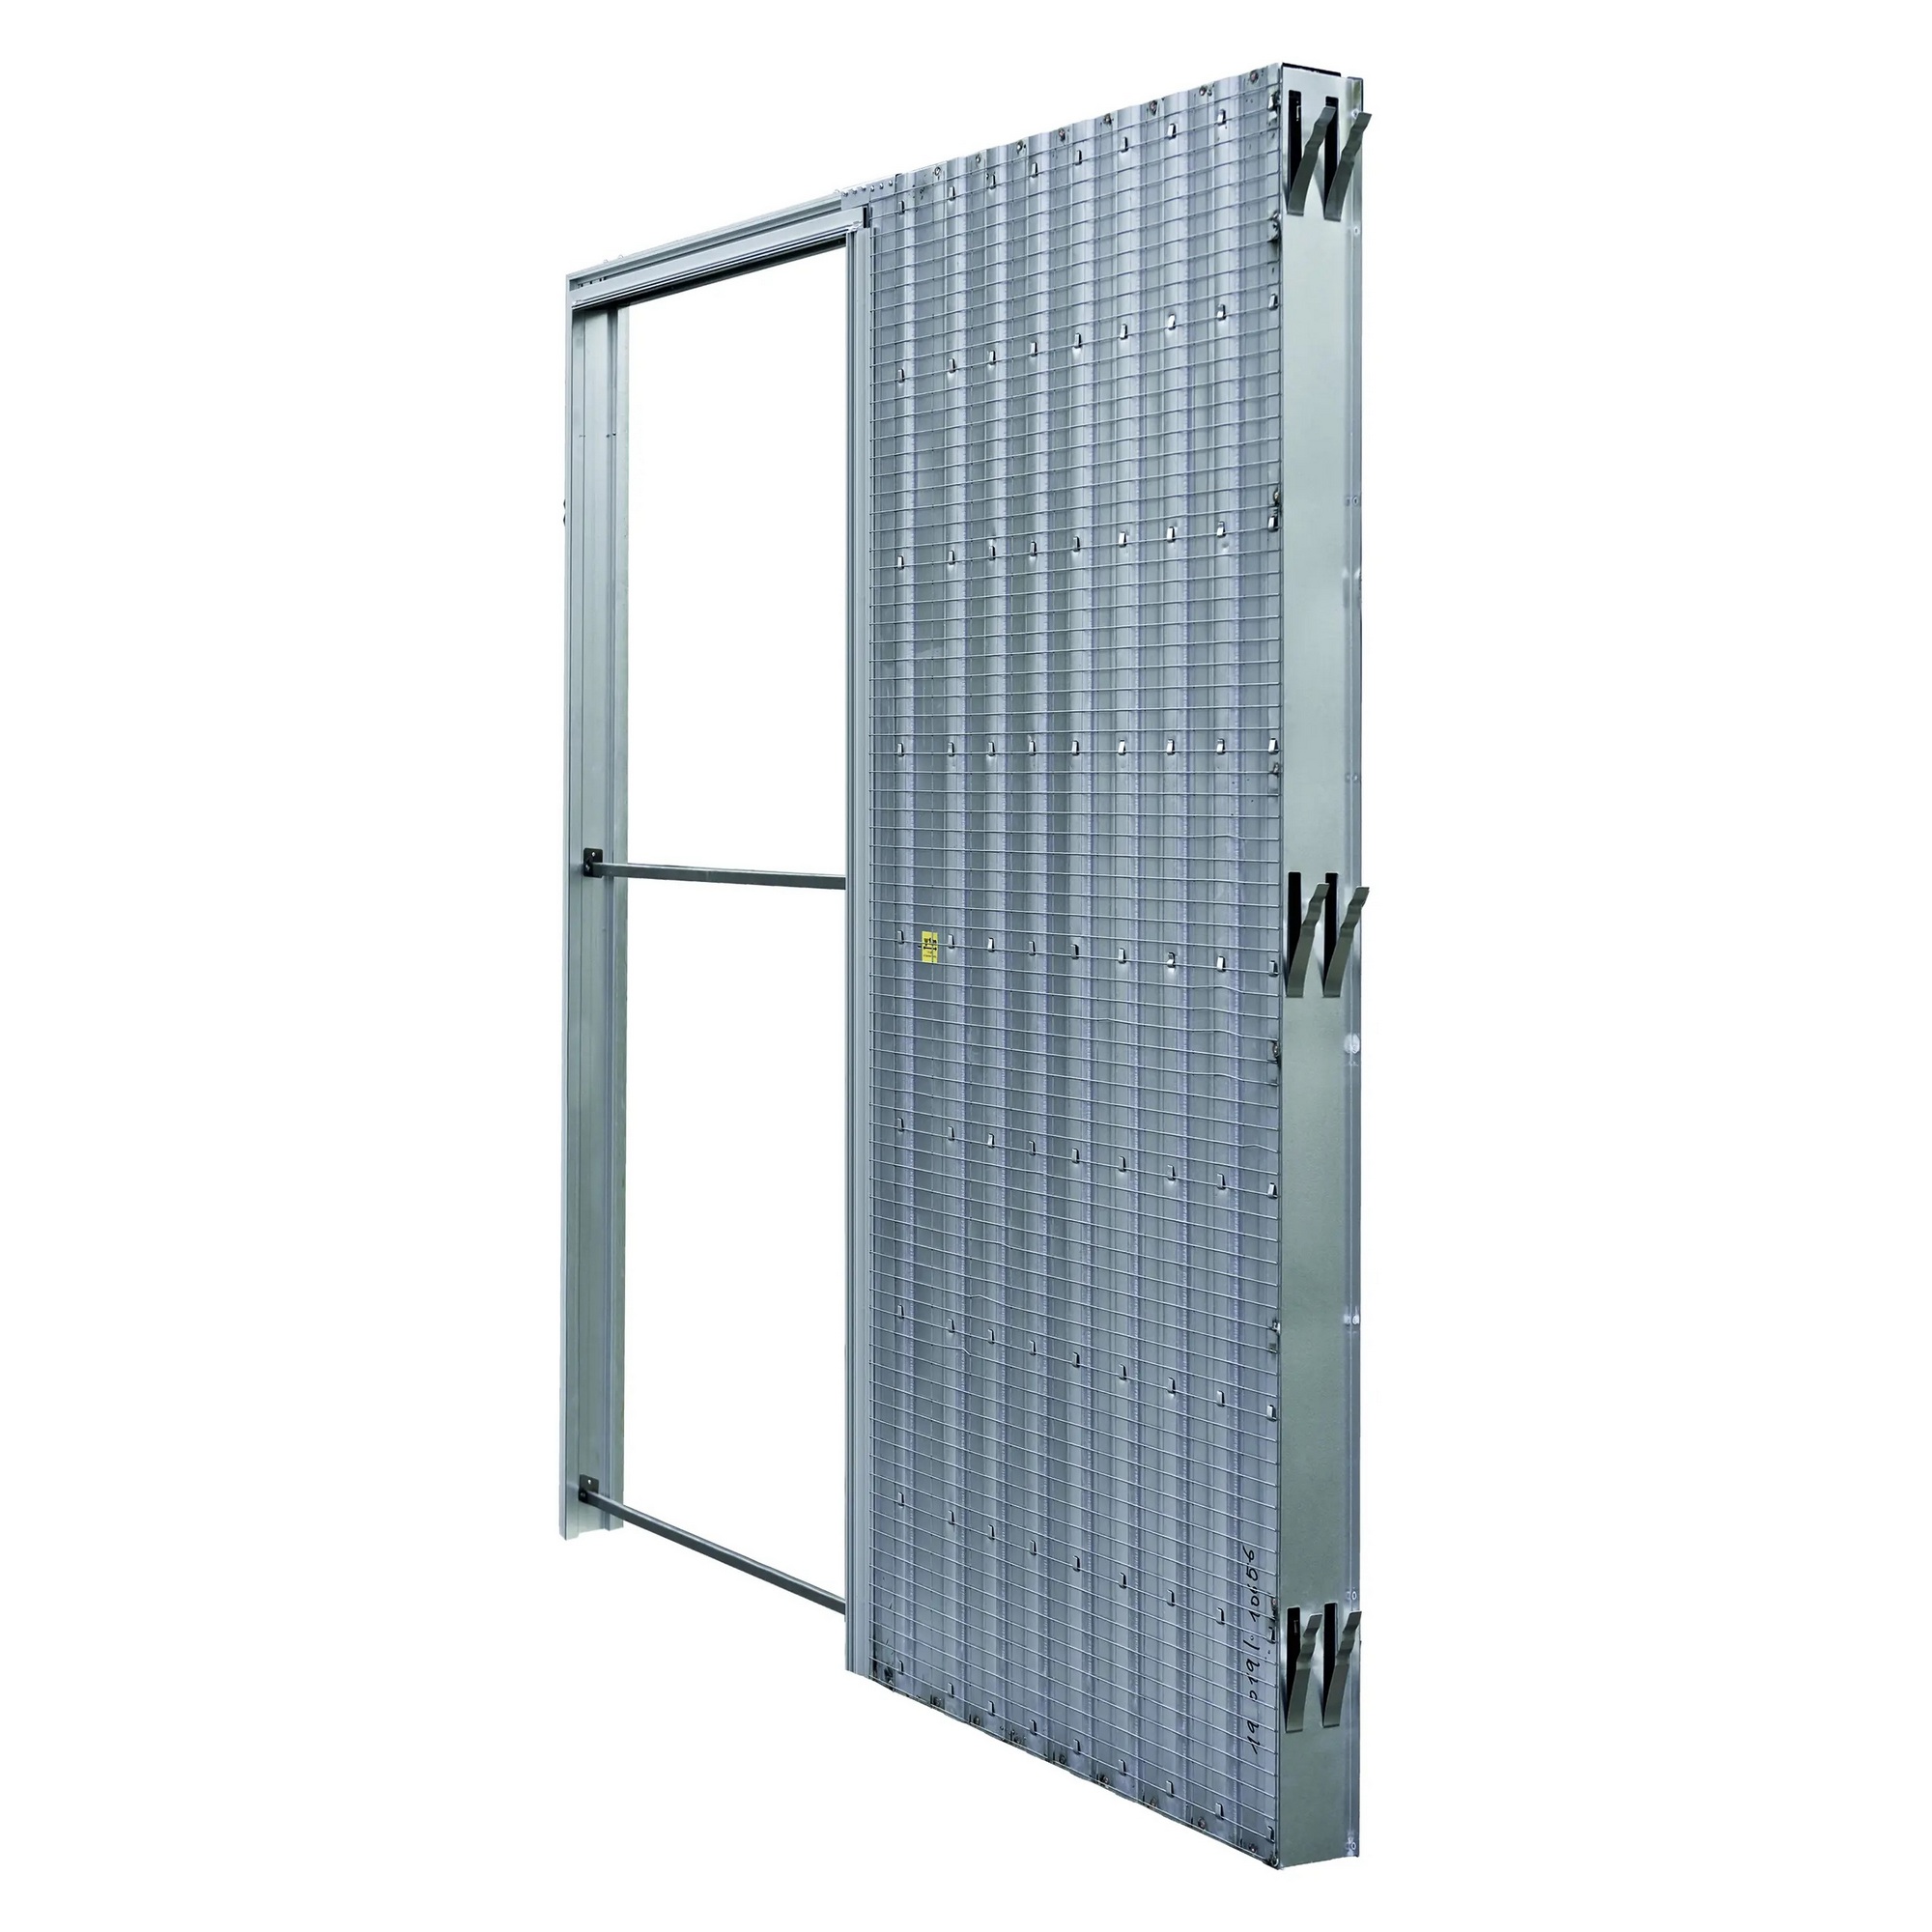 Pouzdro pro posuvné dveře JAP AKTIVE standard 800 mm do zdiva